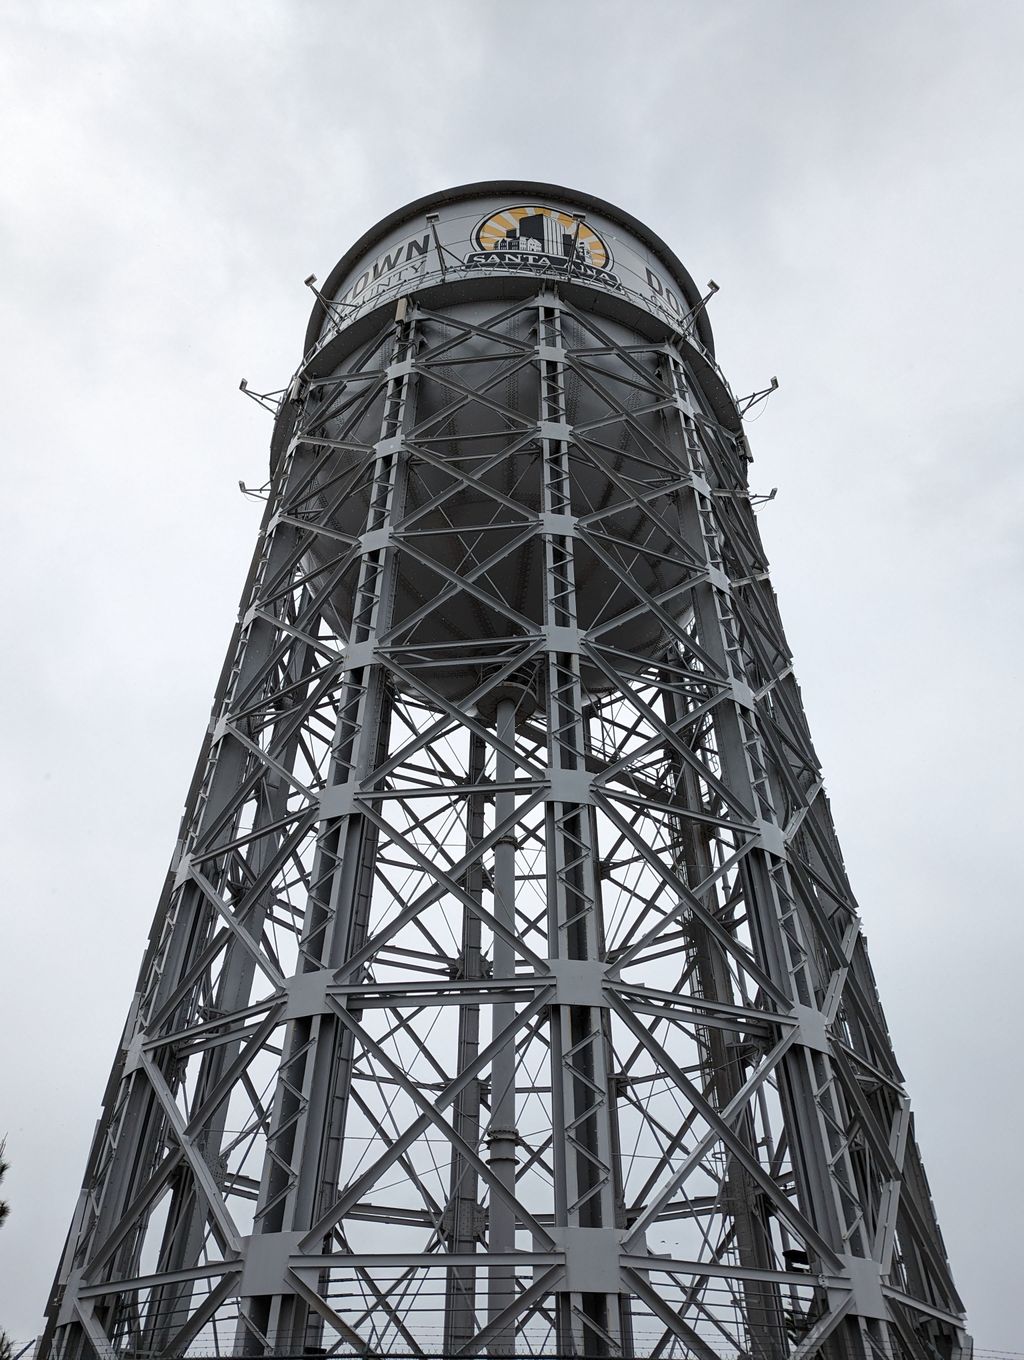 Santa Ana Water Tower